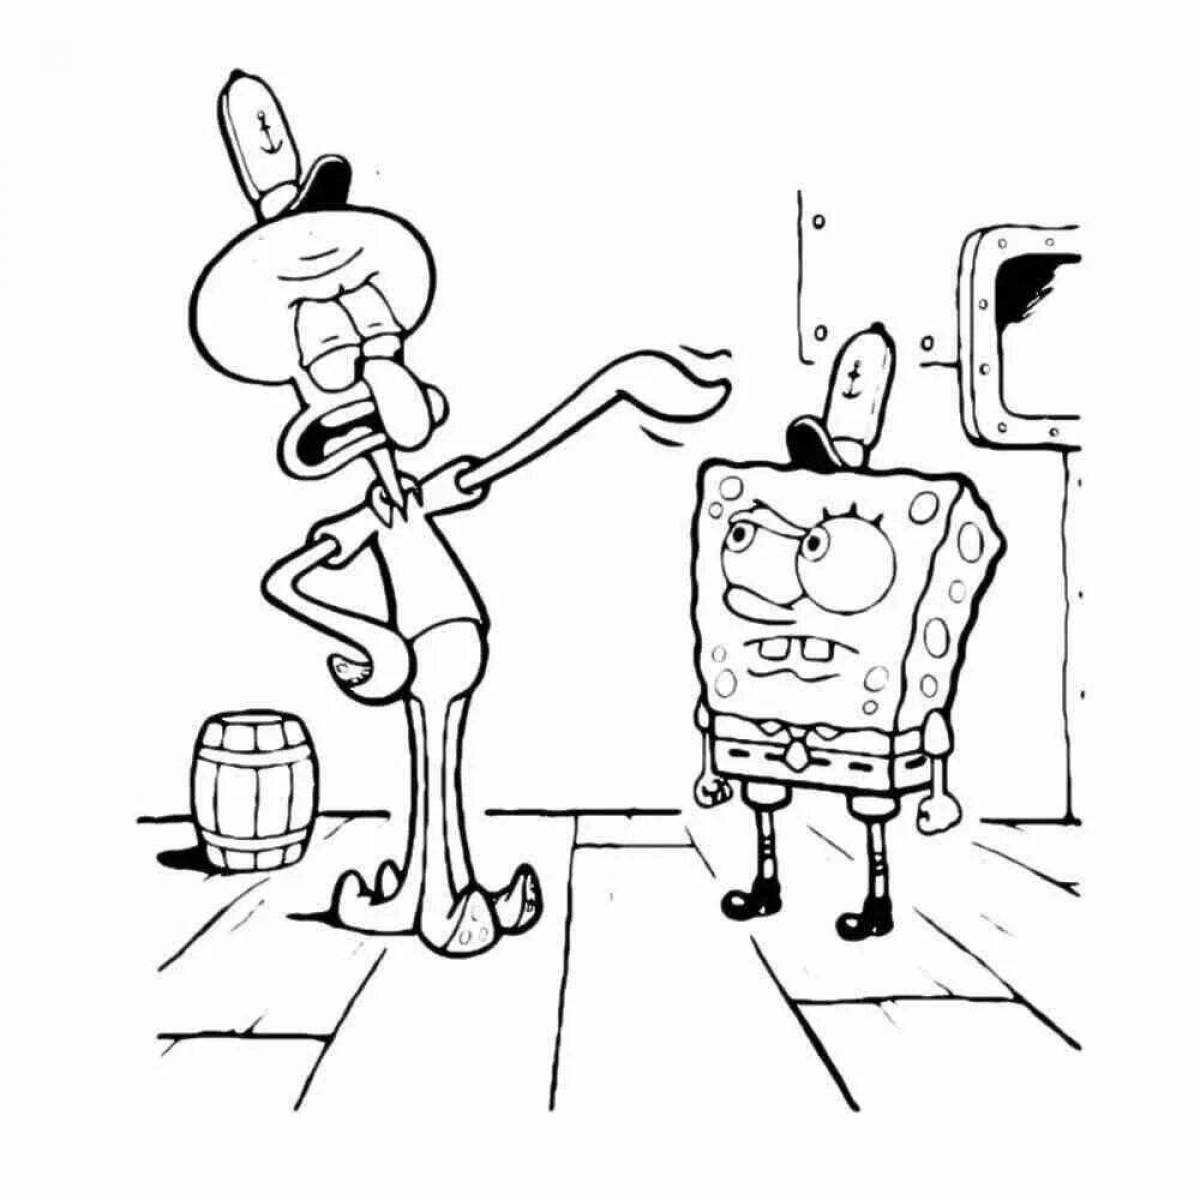 Humorous coloring spongebob squidward